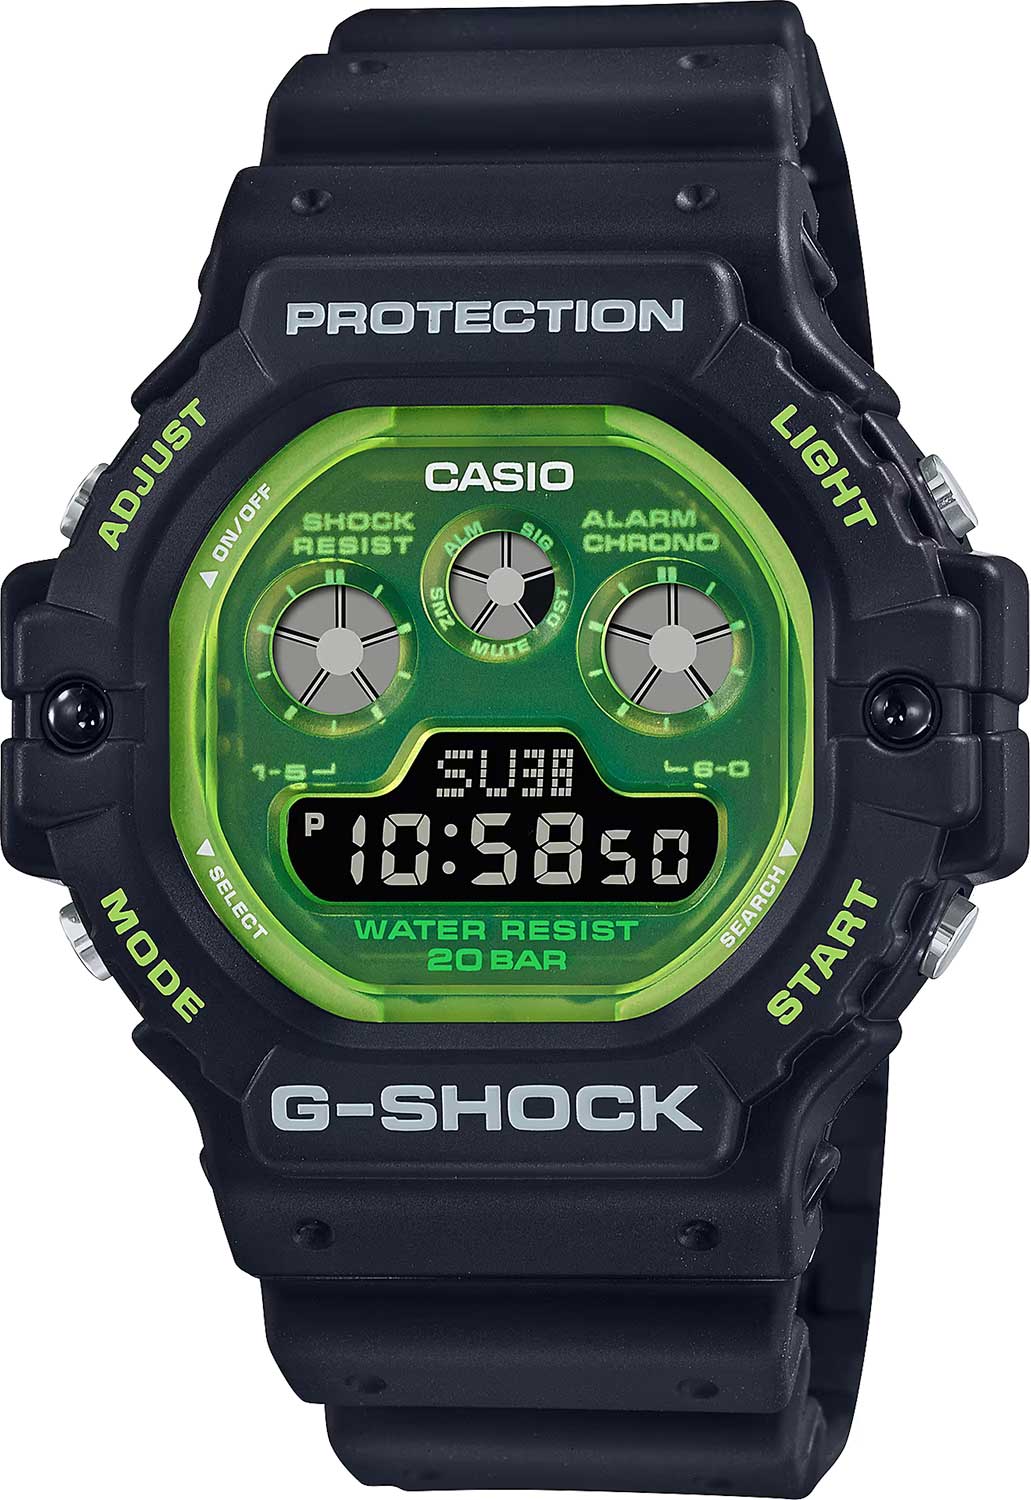    Casio G-SHOCK DW-5900TS-1  